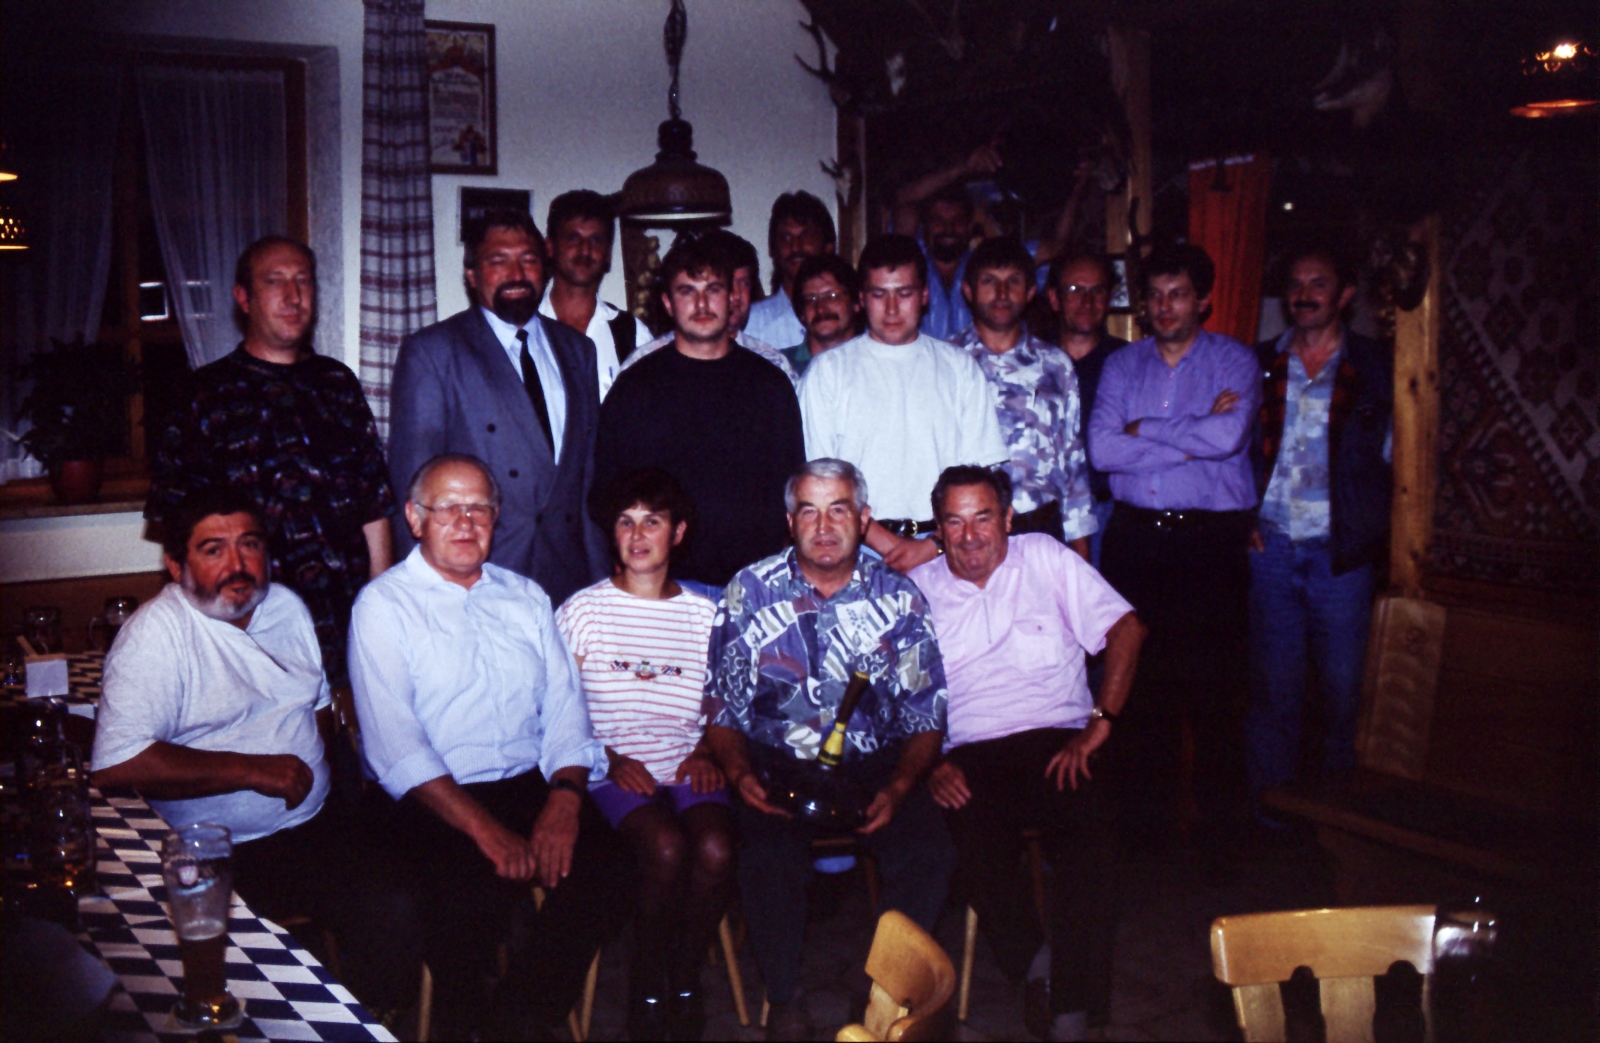 1994 SSC Stockschützenclub Gründung